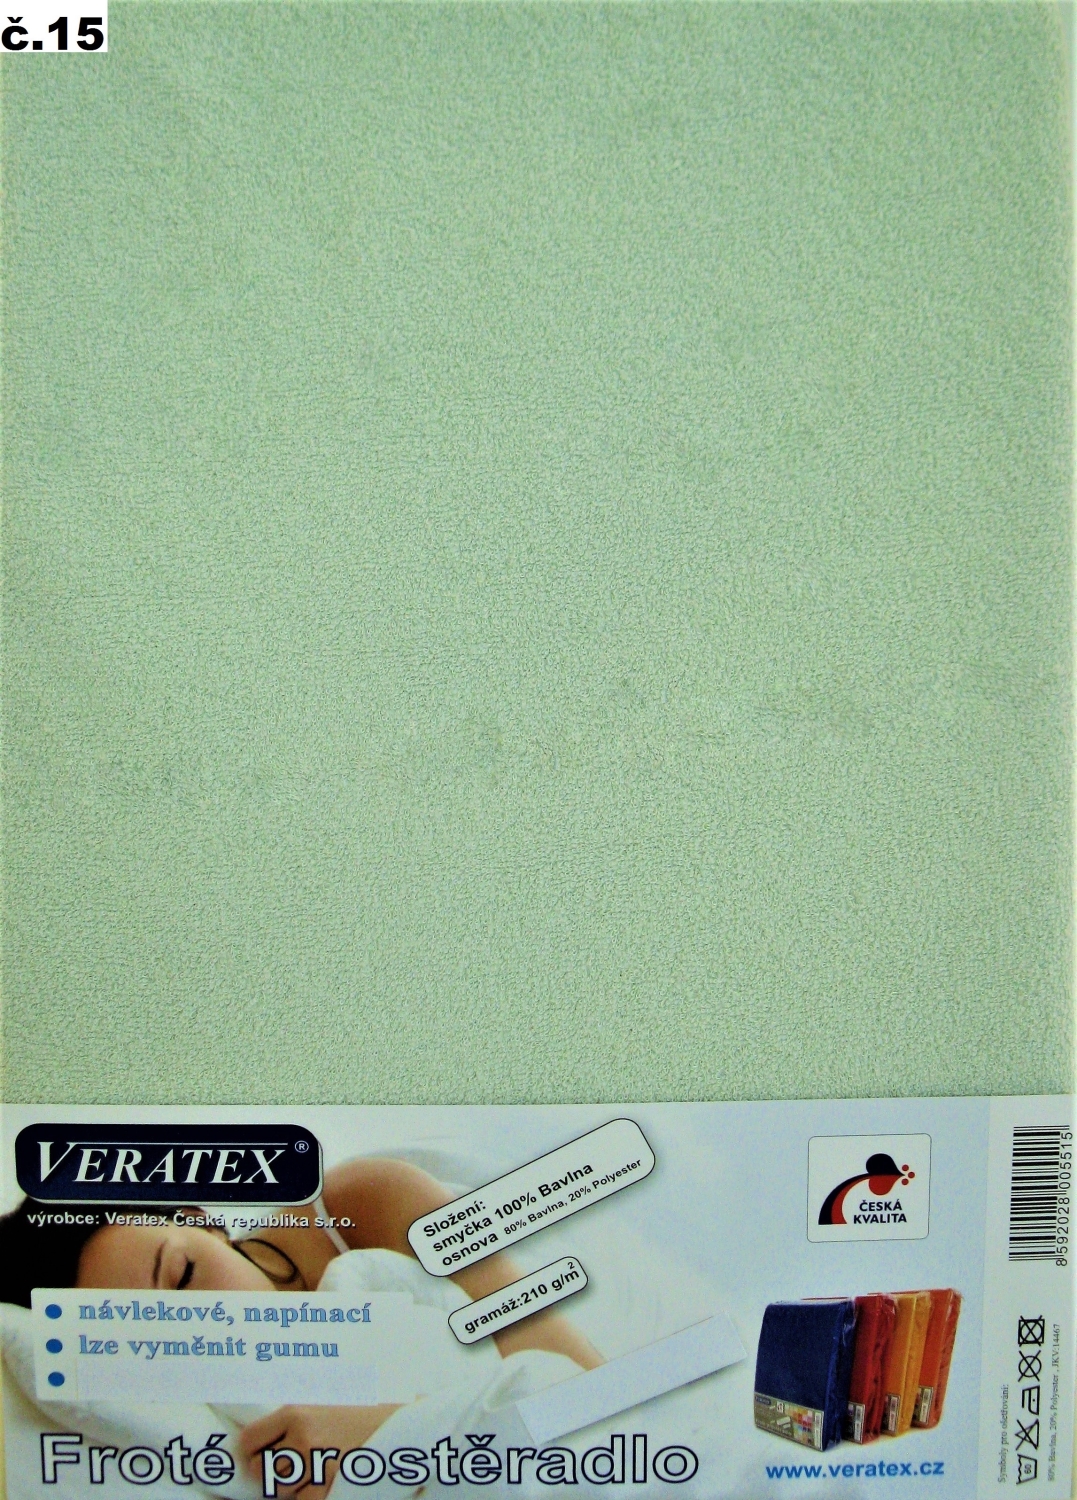 Veratex Froté prostěradlo jednolůžko 80x200/25cm (č.15 sv.zelené)